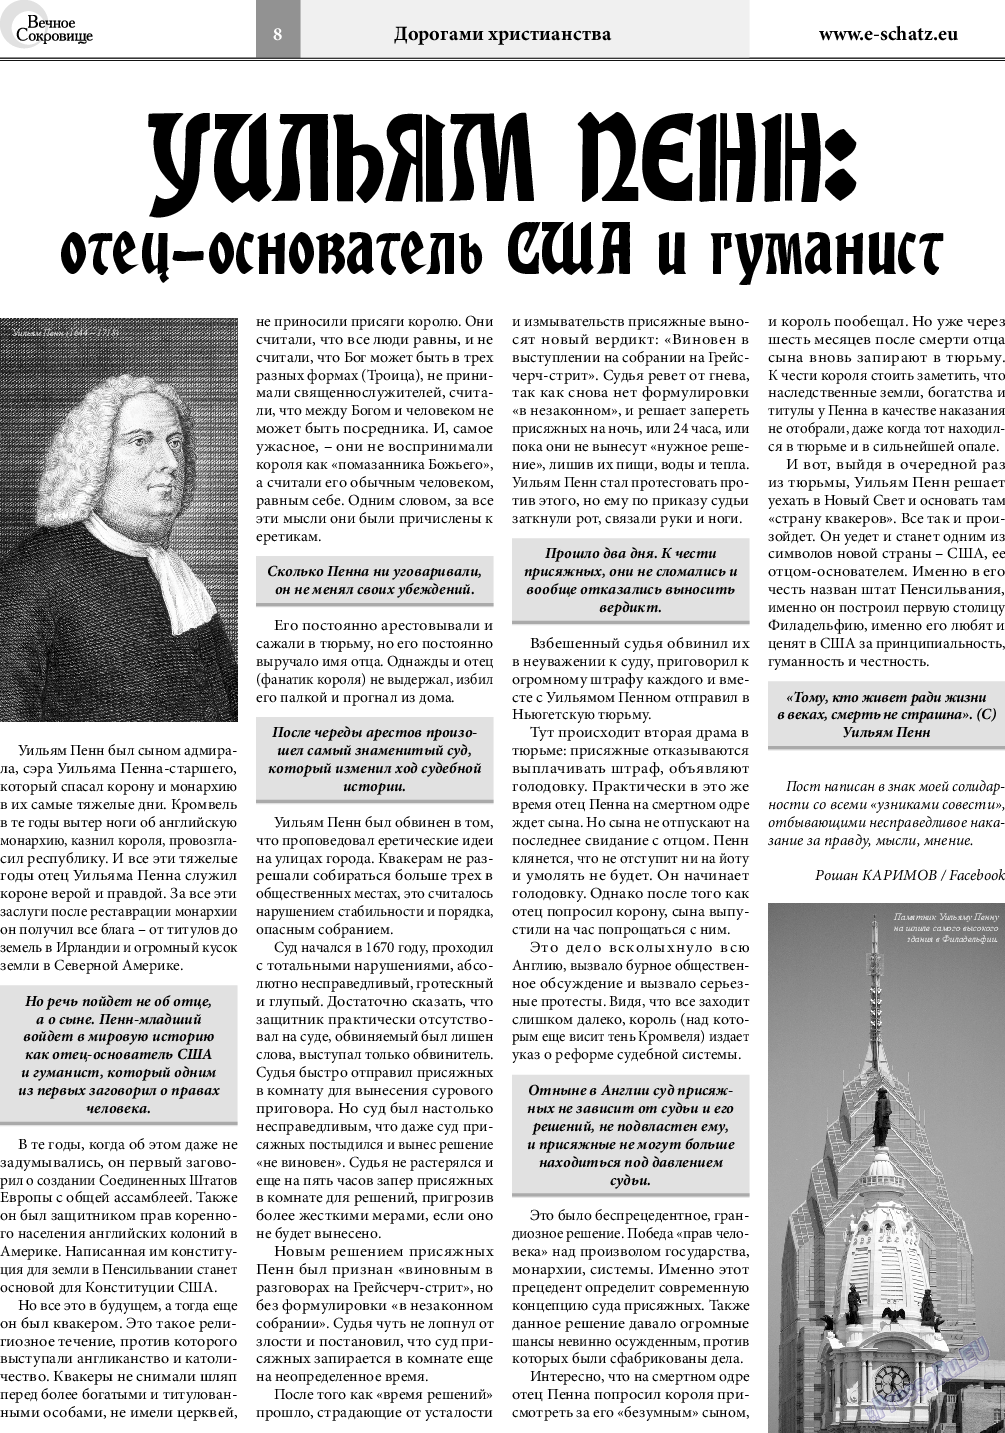 Вечное сокровище, газета. 2019 №1 стр.8